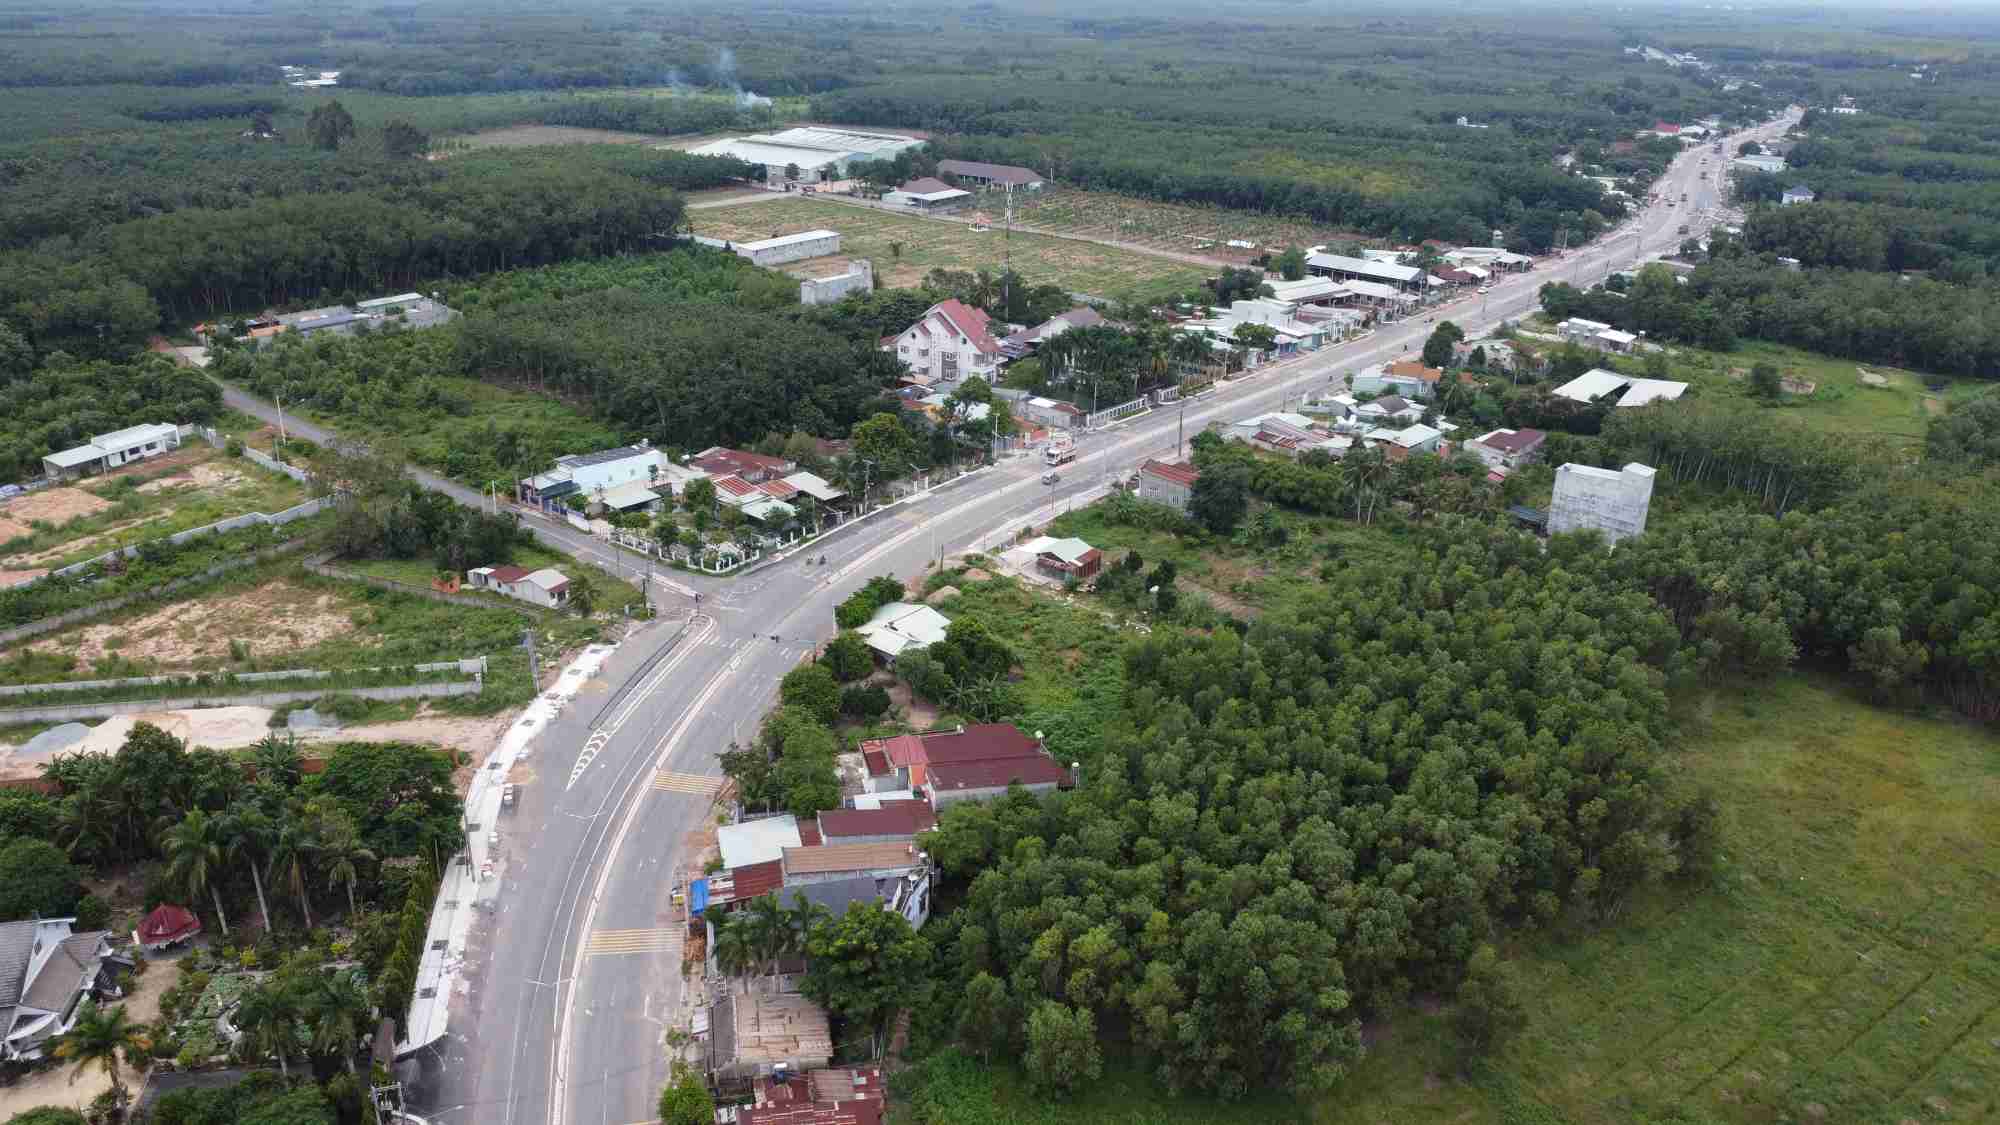 Huyện Dầu Tiếng đang phát triển hạ tầng giao thông, xây dựng các cụm công nghiệp thu hút đầu tư. Ảnh: Đình Trọng